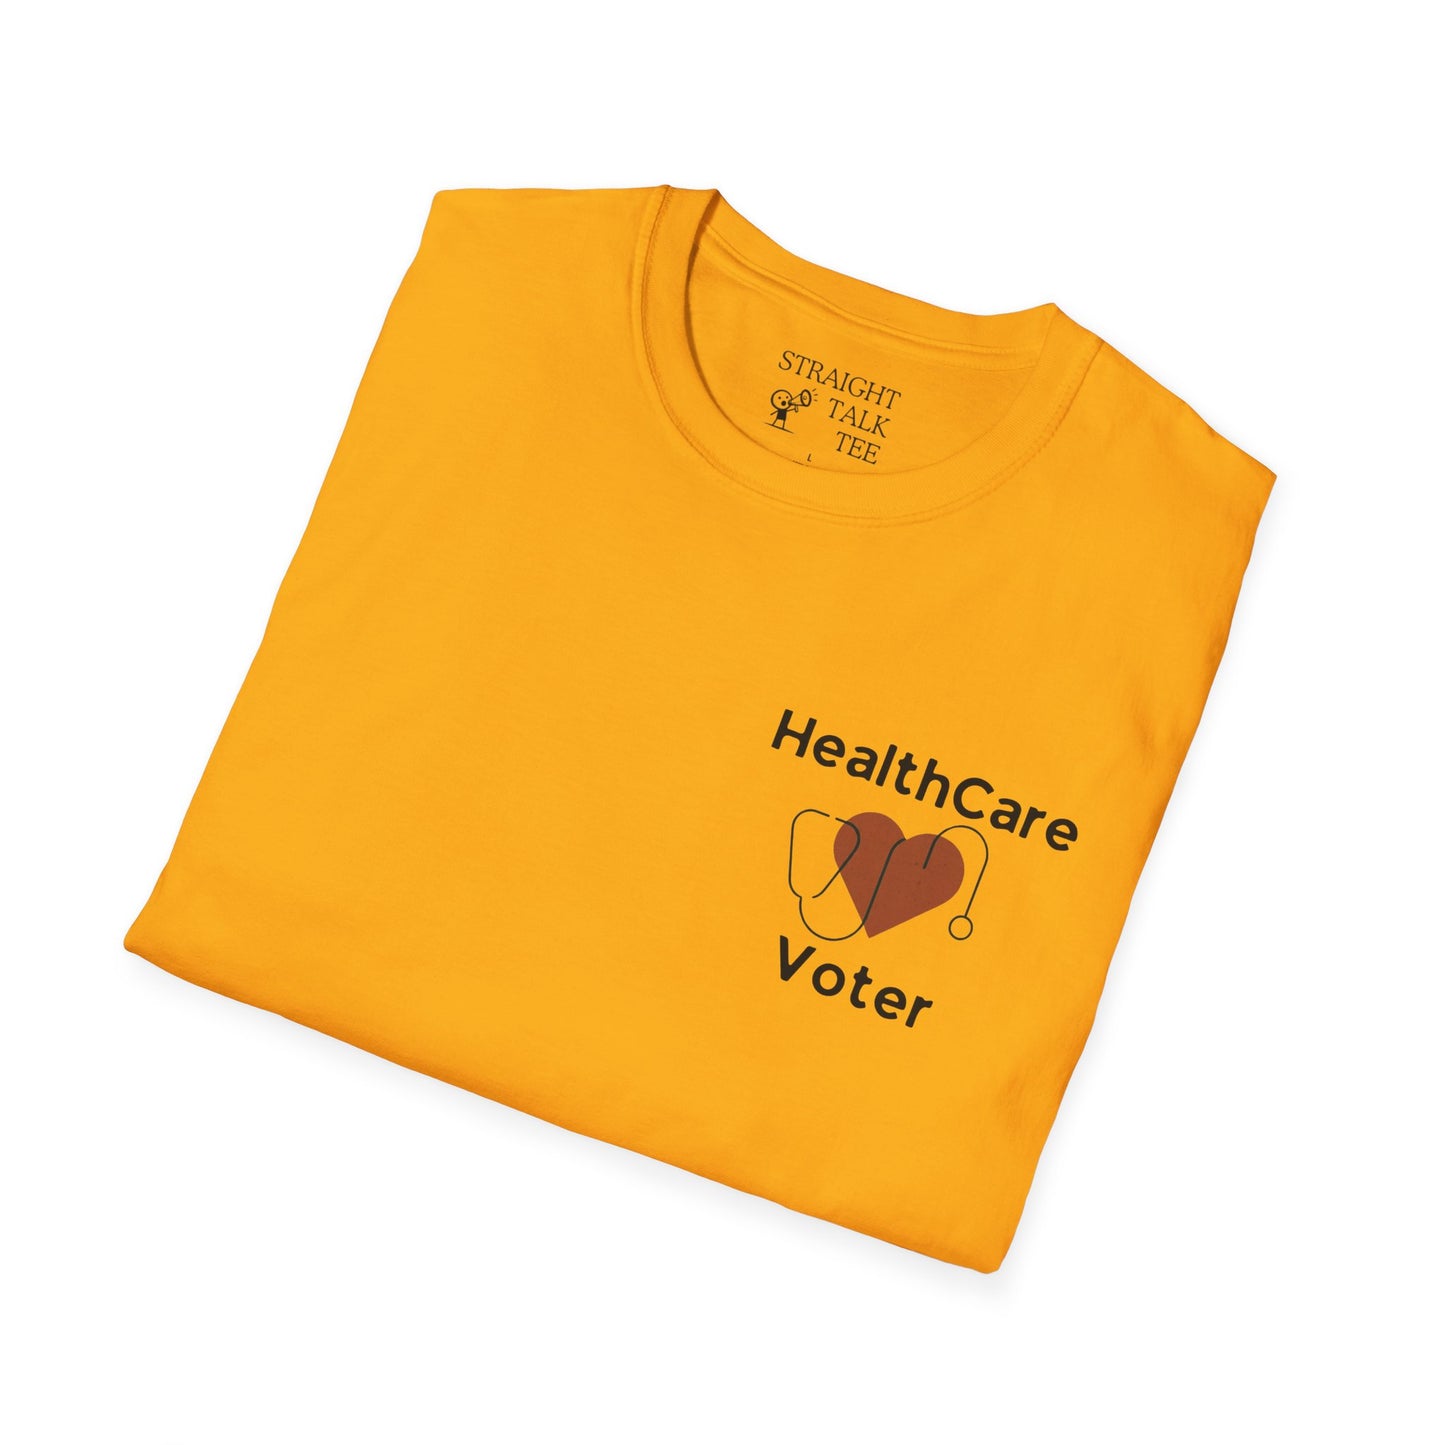 Healthcare Voter Soft-Syle t-shirt |unisex| Show you Care! Quiet Activism